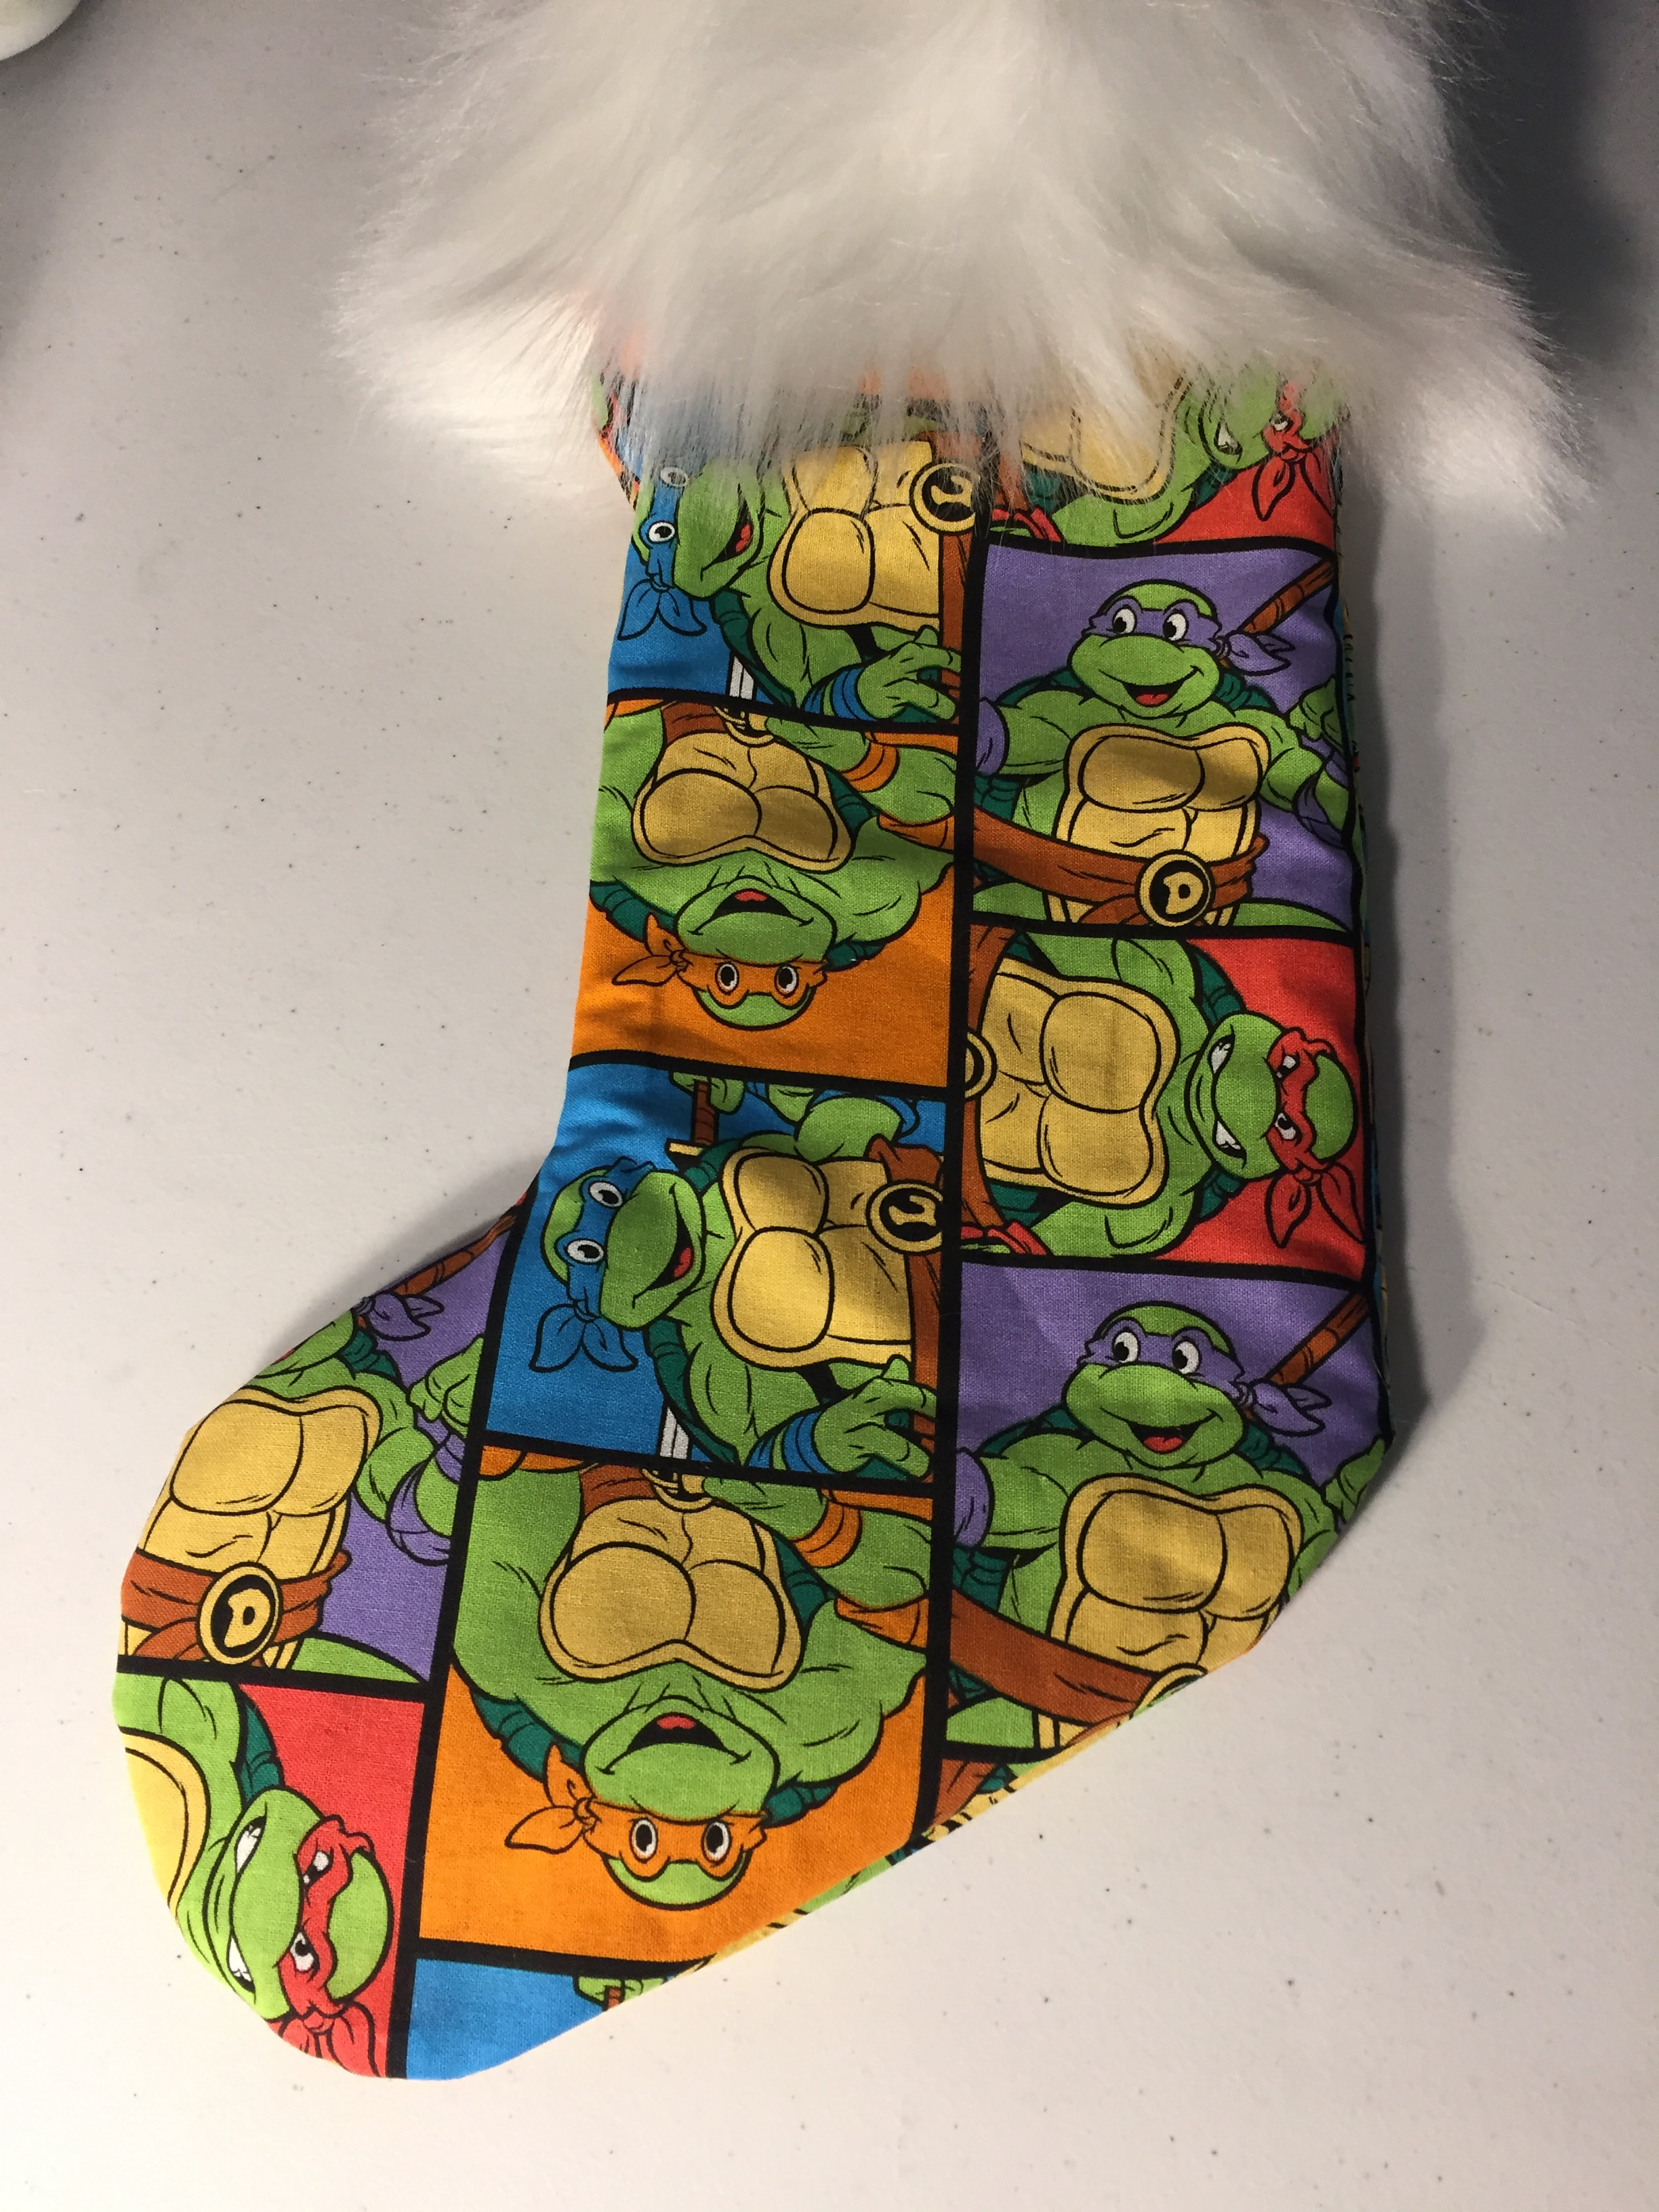 Vintage Teenage Mutant Ninja Turtle TMNT Stocking Leonardo Christmas